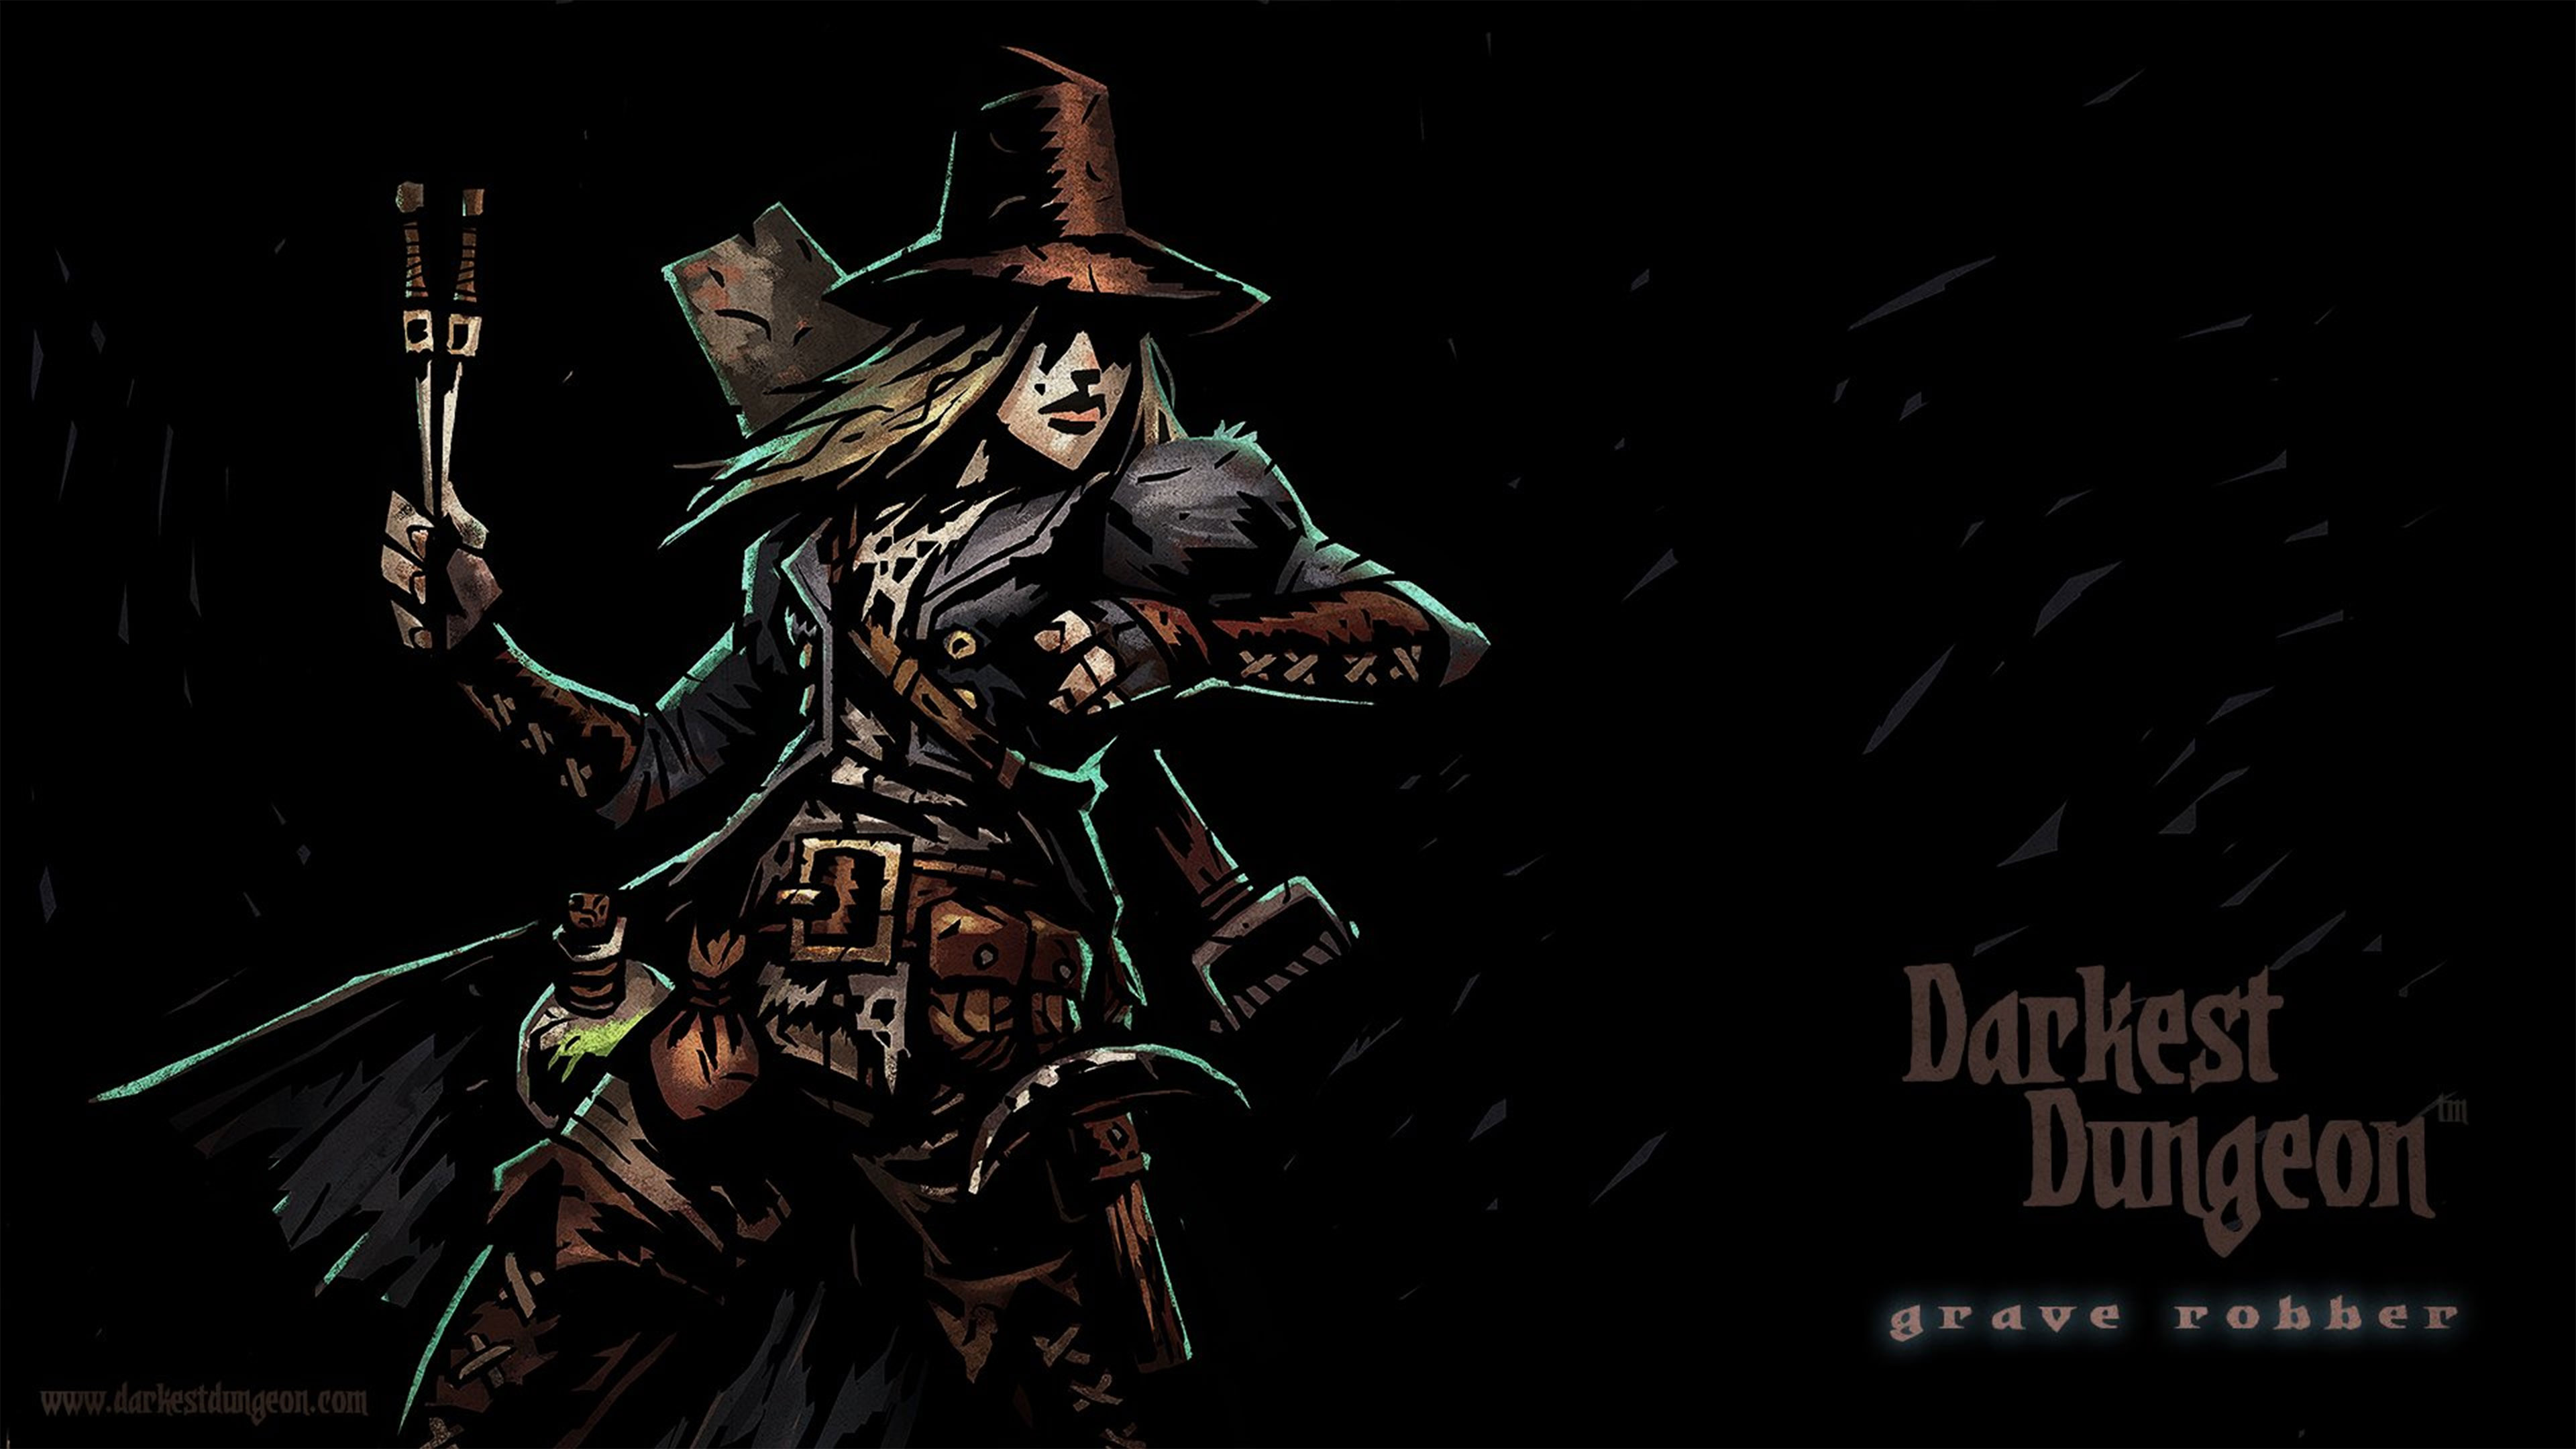 Darkest Dungeon Wallpapers in Ultra HD 4K   Gameranx 3840x2160